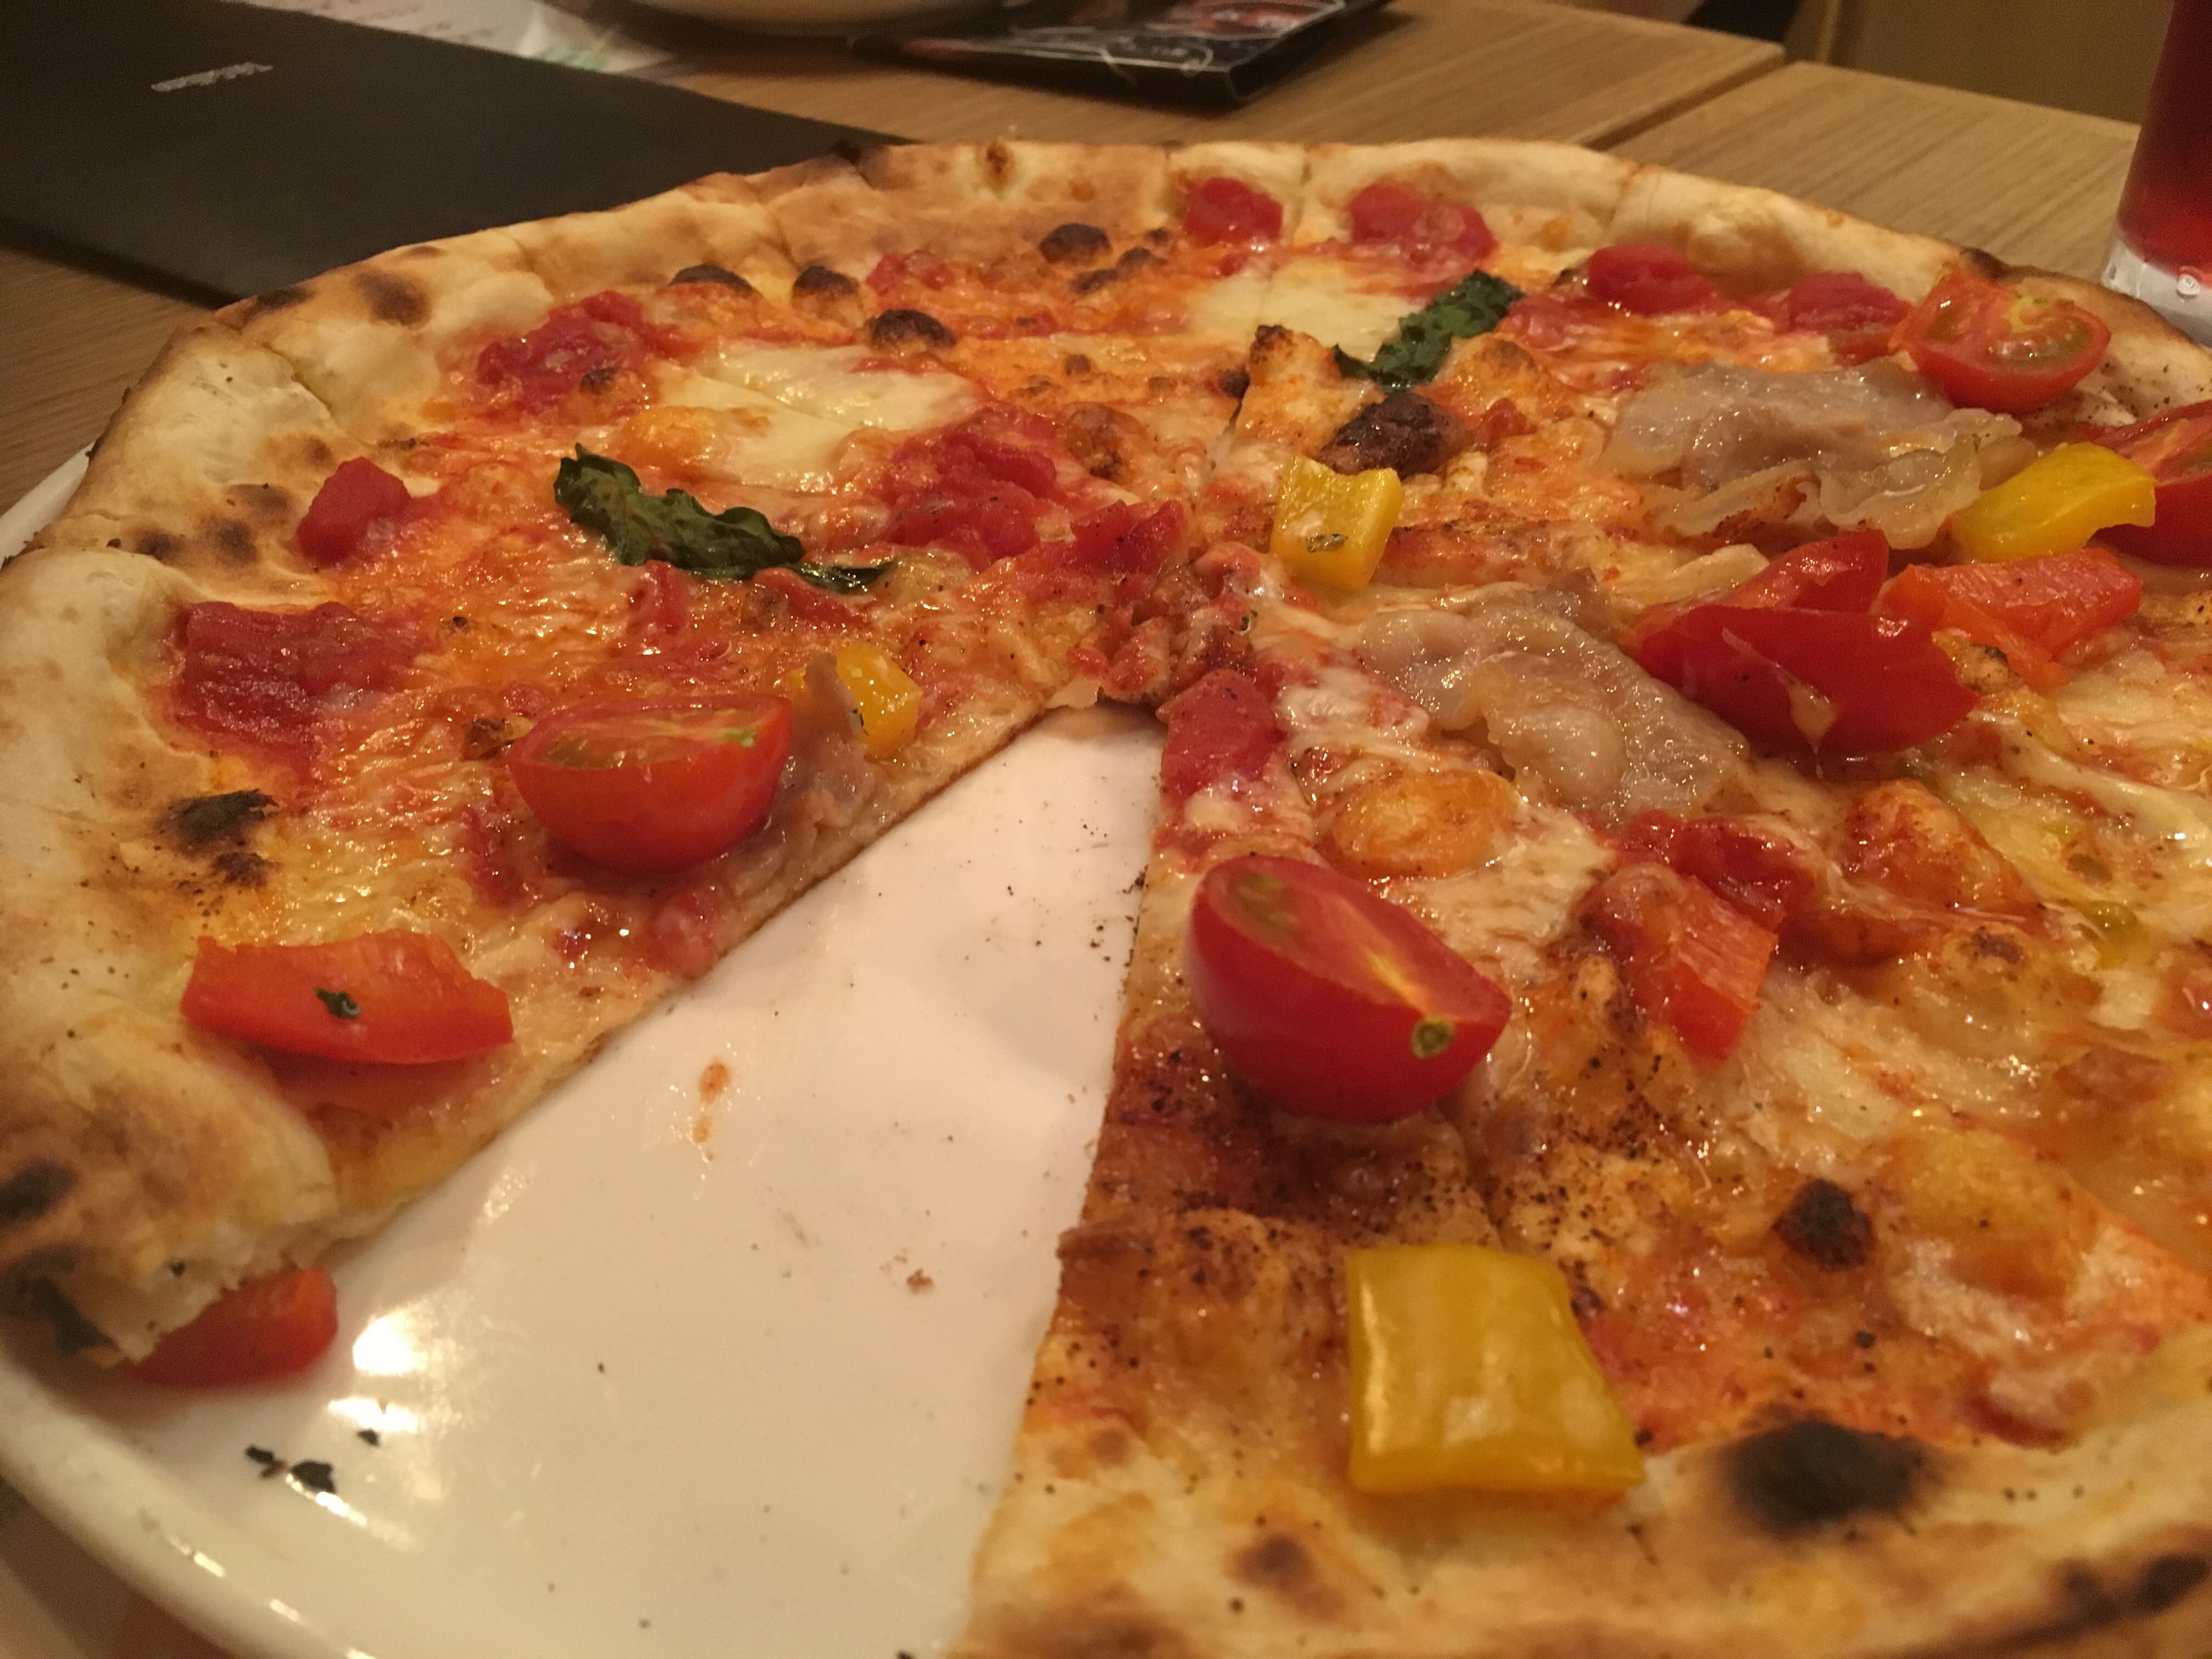 岡崎駅のトンガリアーノ ピザが美味しいイタリアン居酒屋 岡崎にゅーす